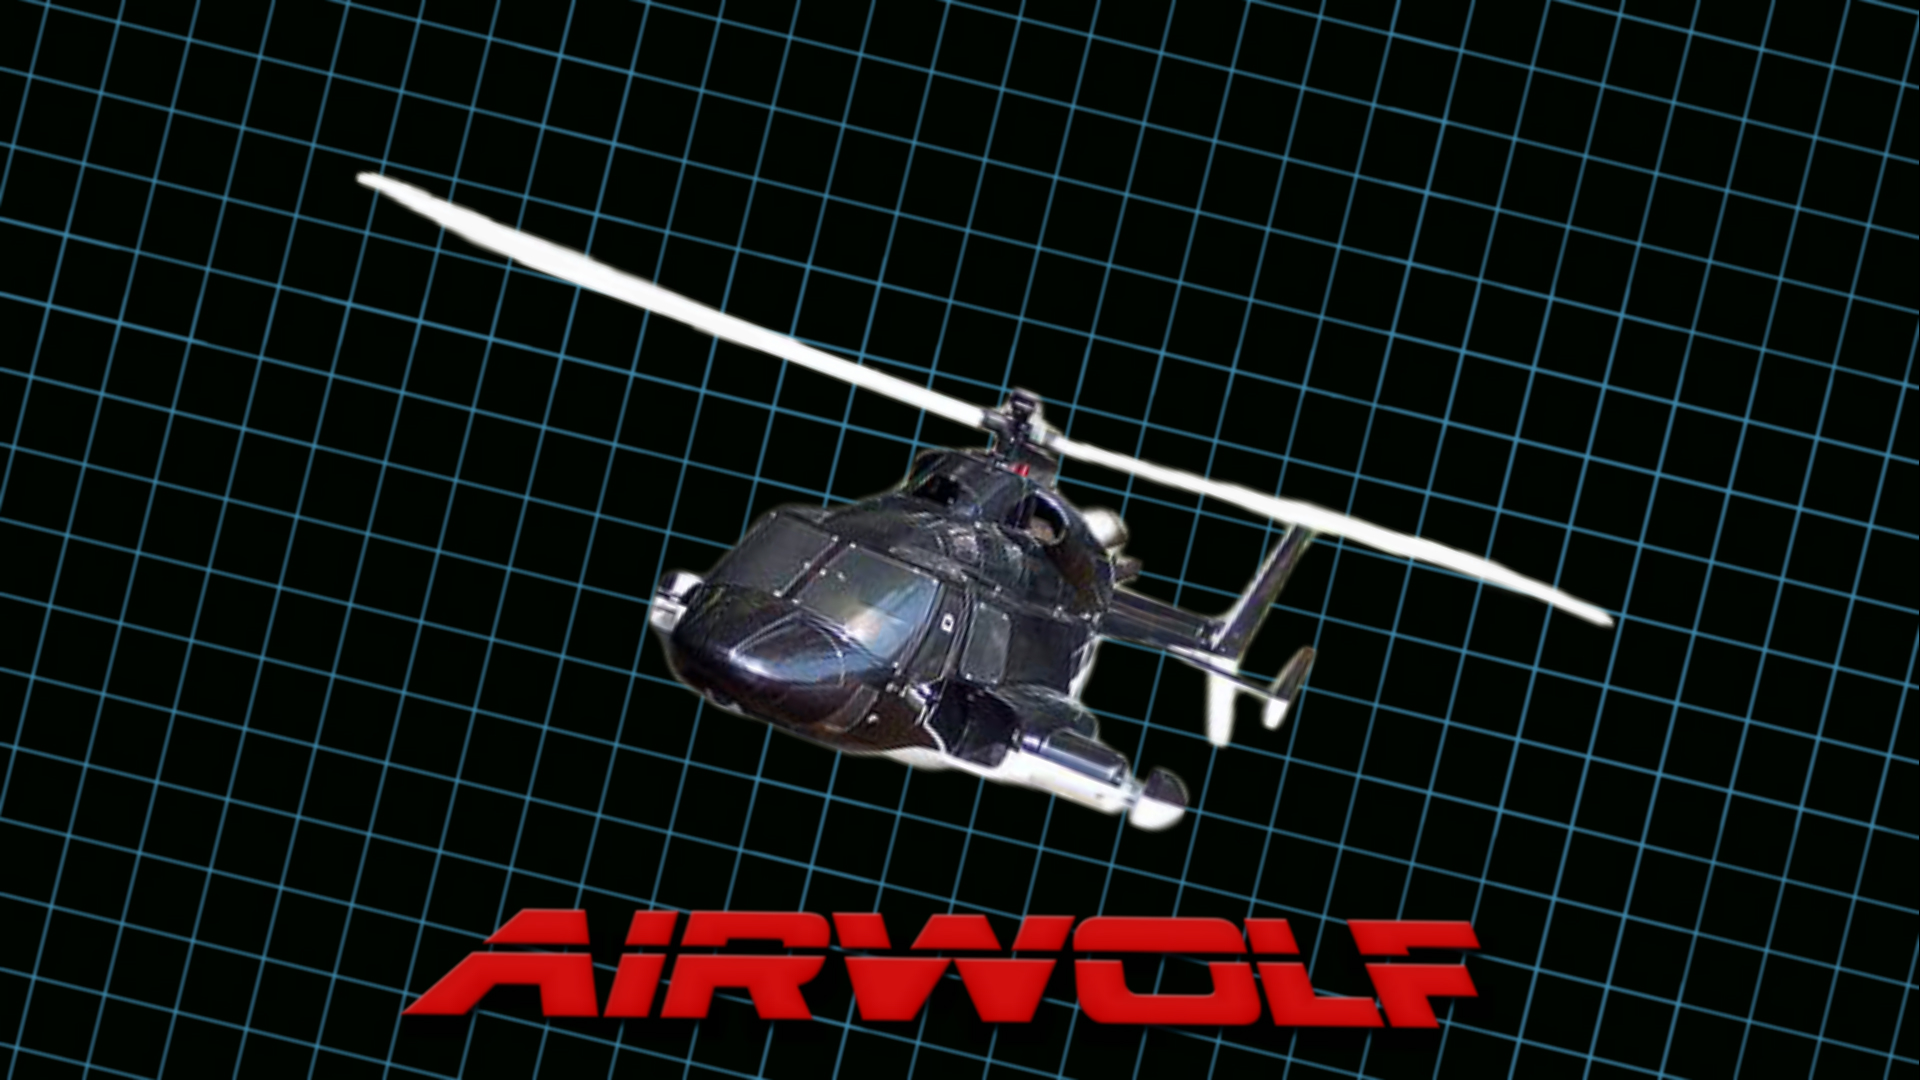 Descargar fondos de escritorio de Airwolf: Helicóptero HD